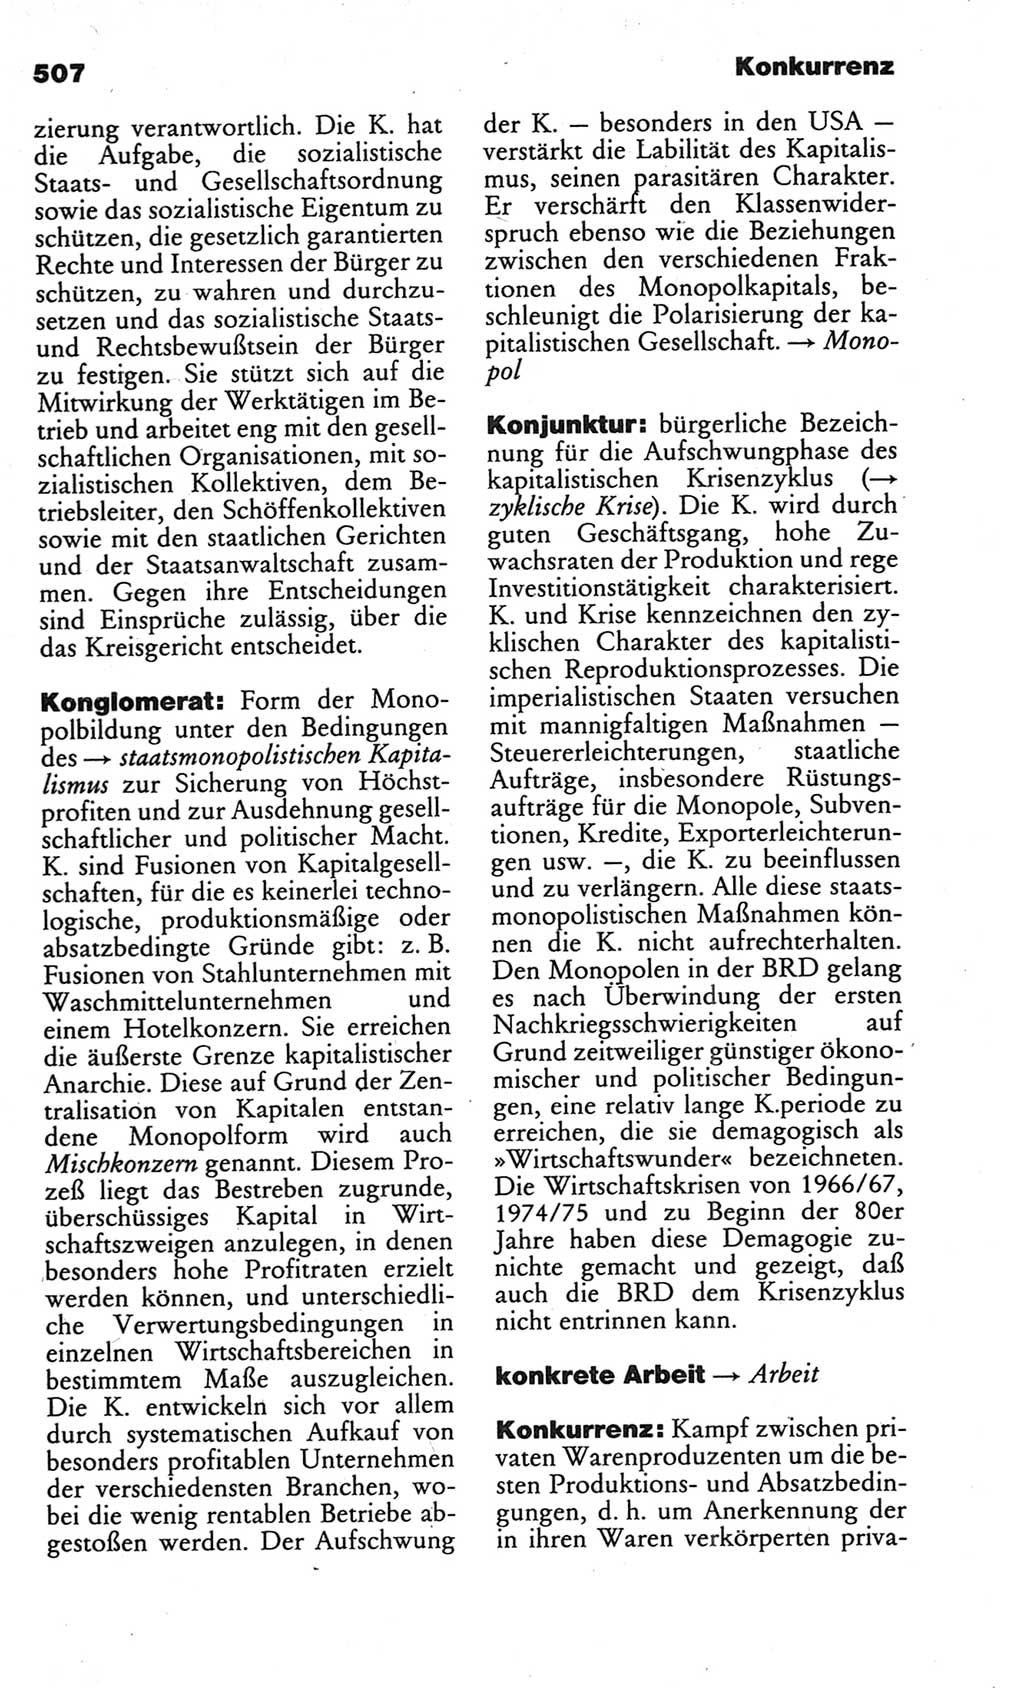 Kleines politisches Wörterbuch [Deutsche Demokratische Republik (DDR)] 1986, Seite 507 (Kl. pol. Wb. DDR 1986, S. 507)